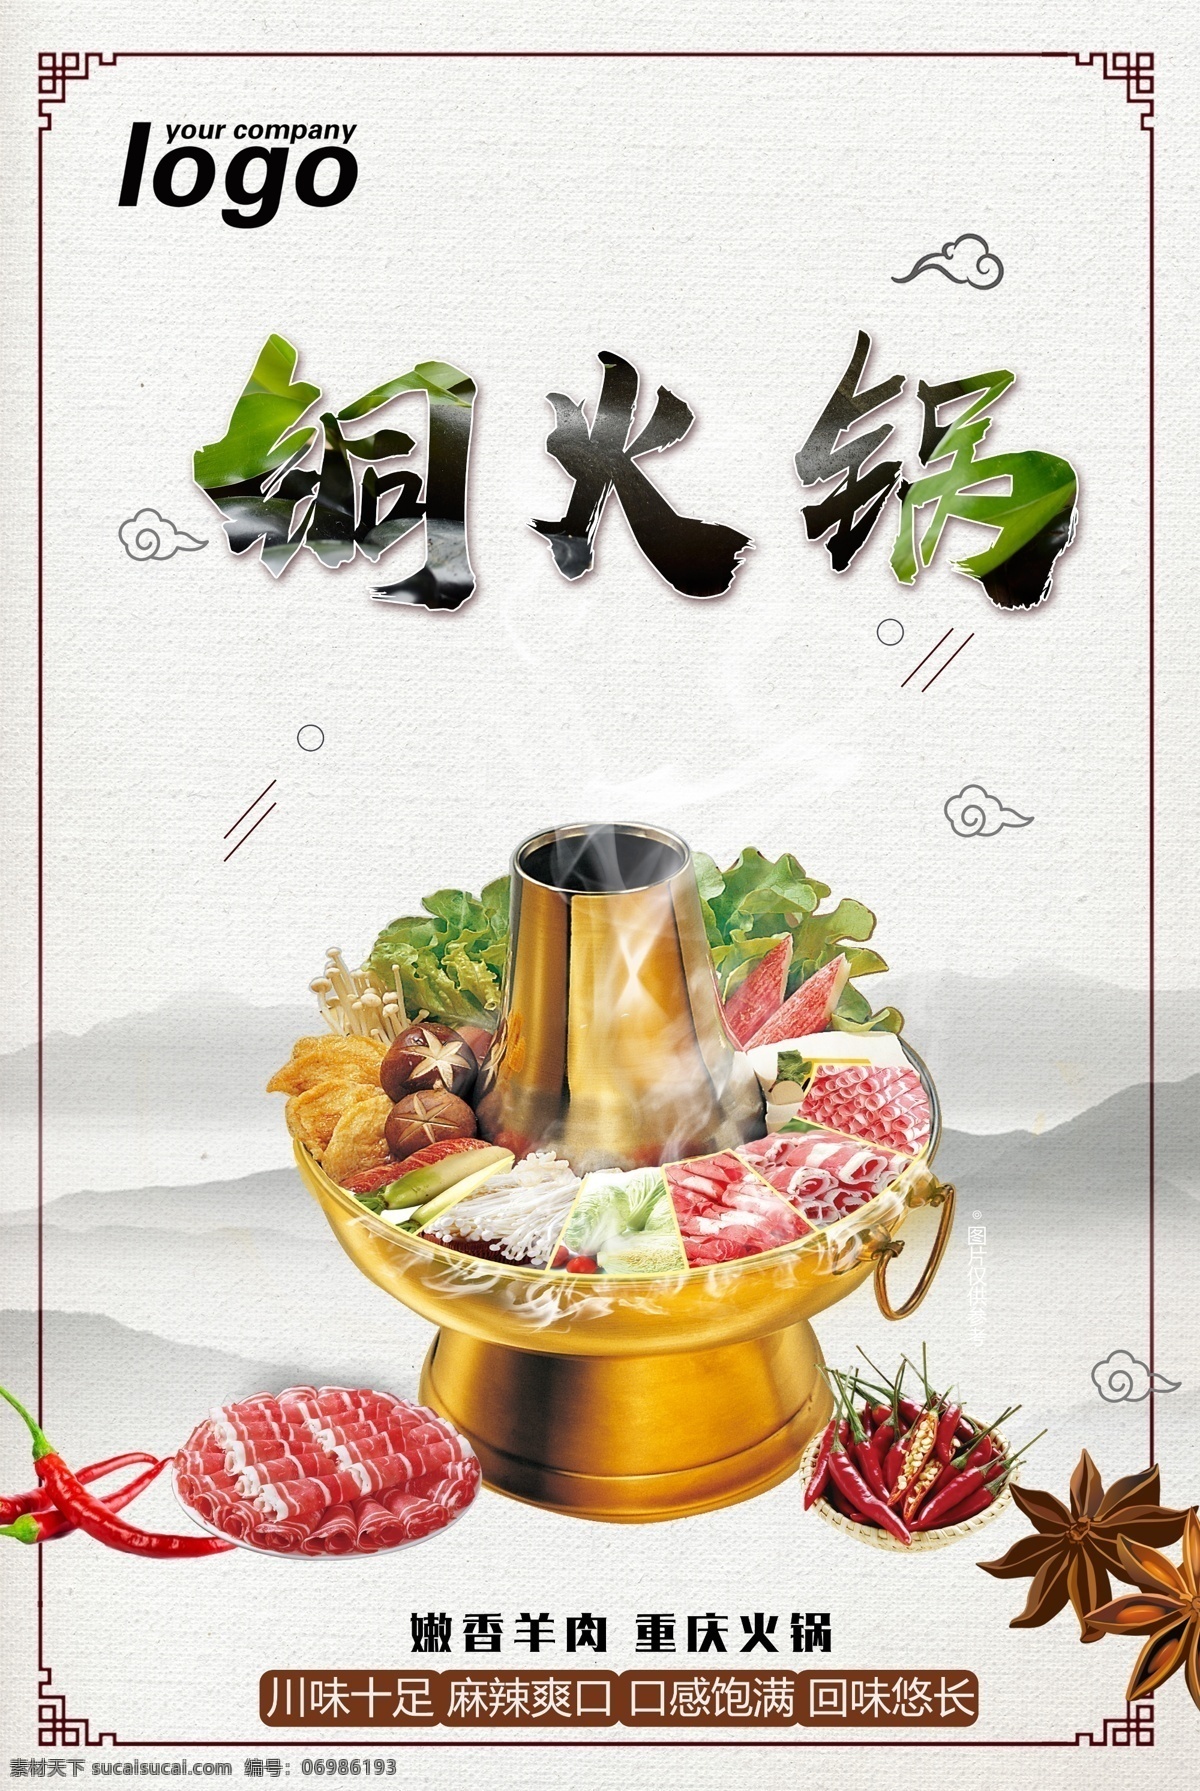 铜火锅 火锅 羊肉 牛肉 中国风 香味 高端 蔬菜 肉 辣椒 高清素材 设计文件